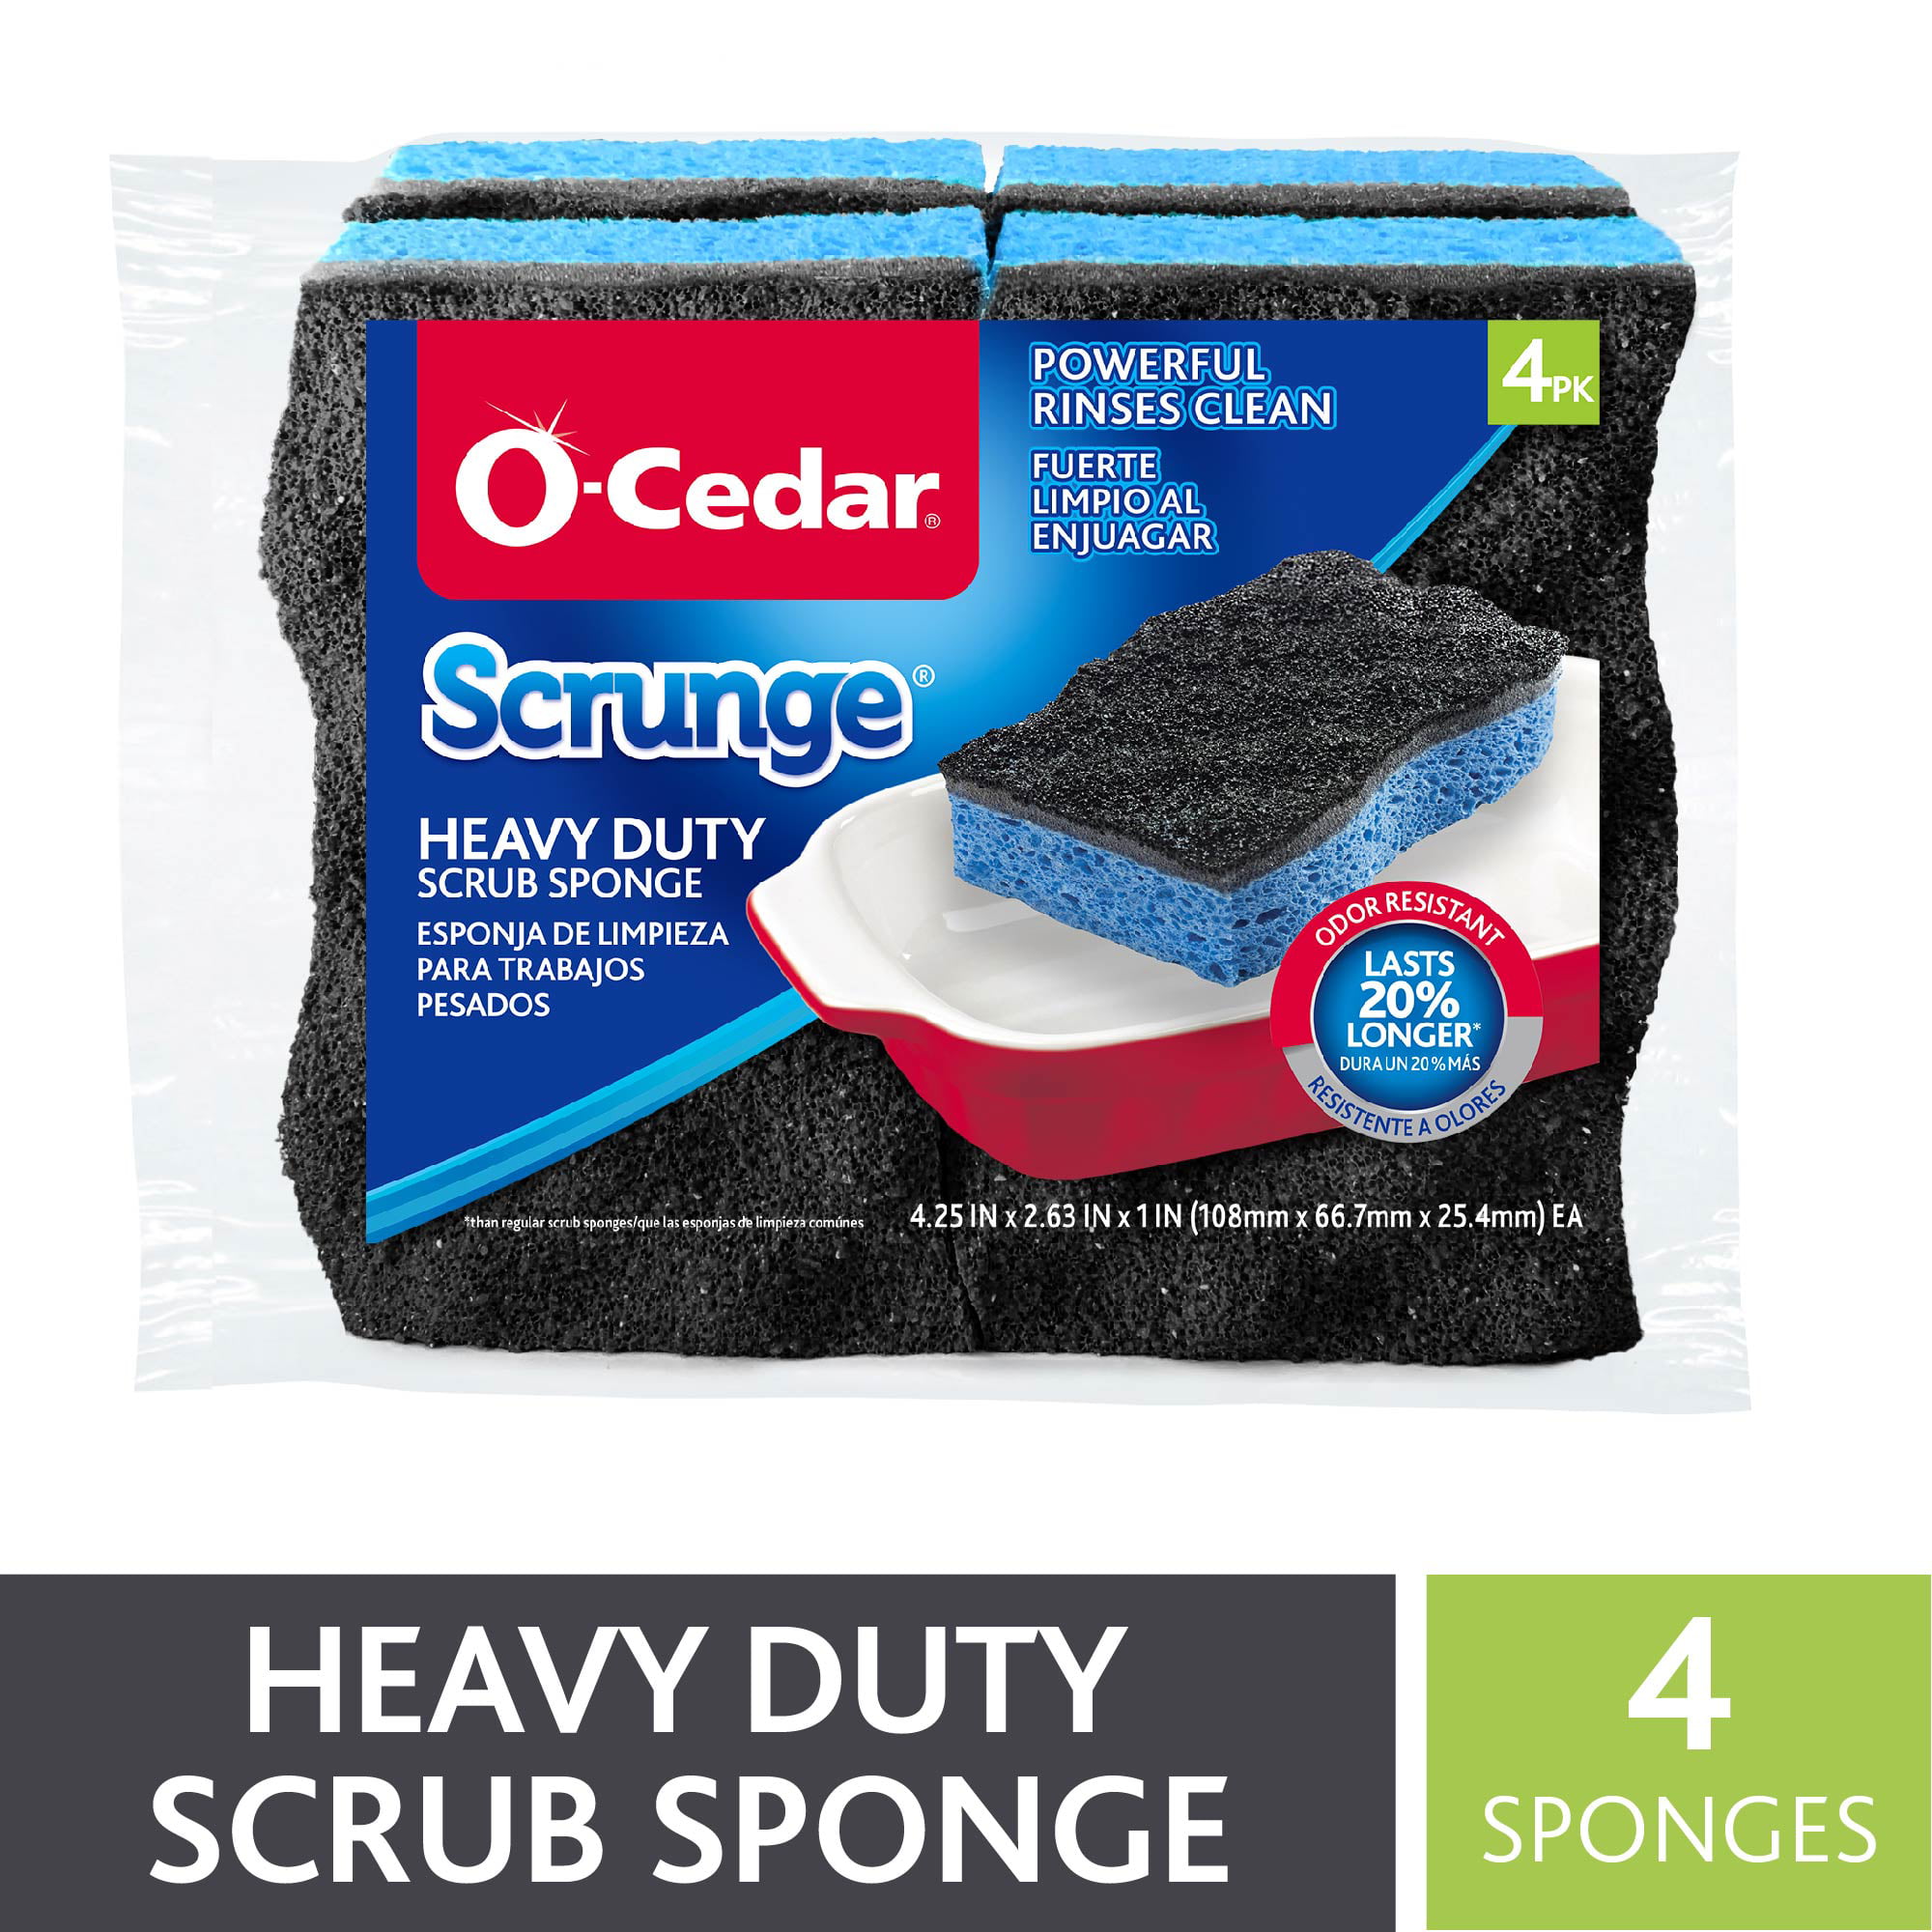 O-Cedar Scrunge Heavy Duty Sponge Pack of 12 